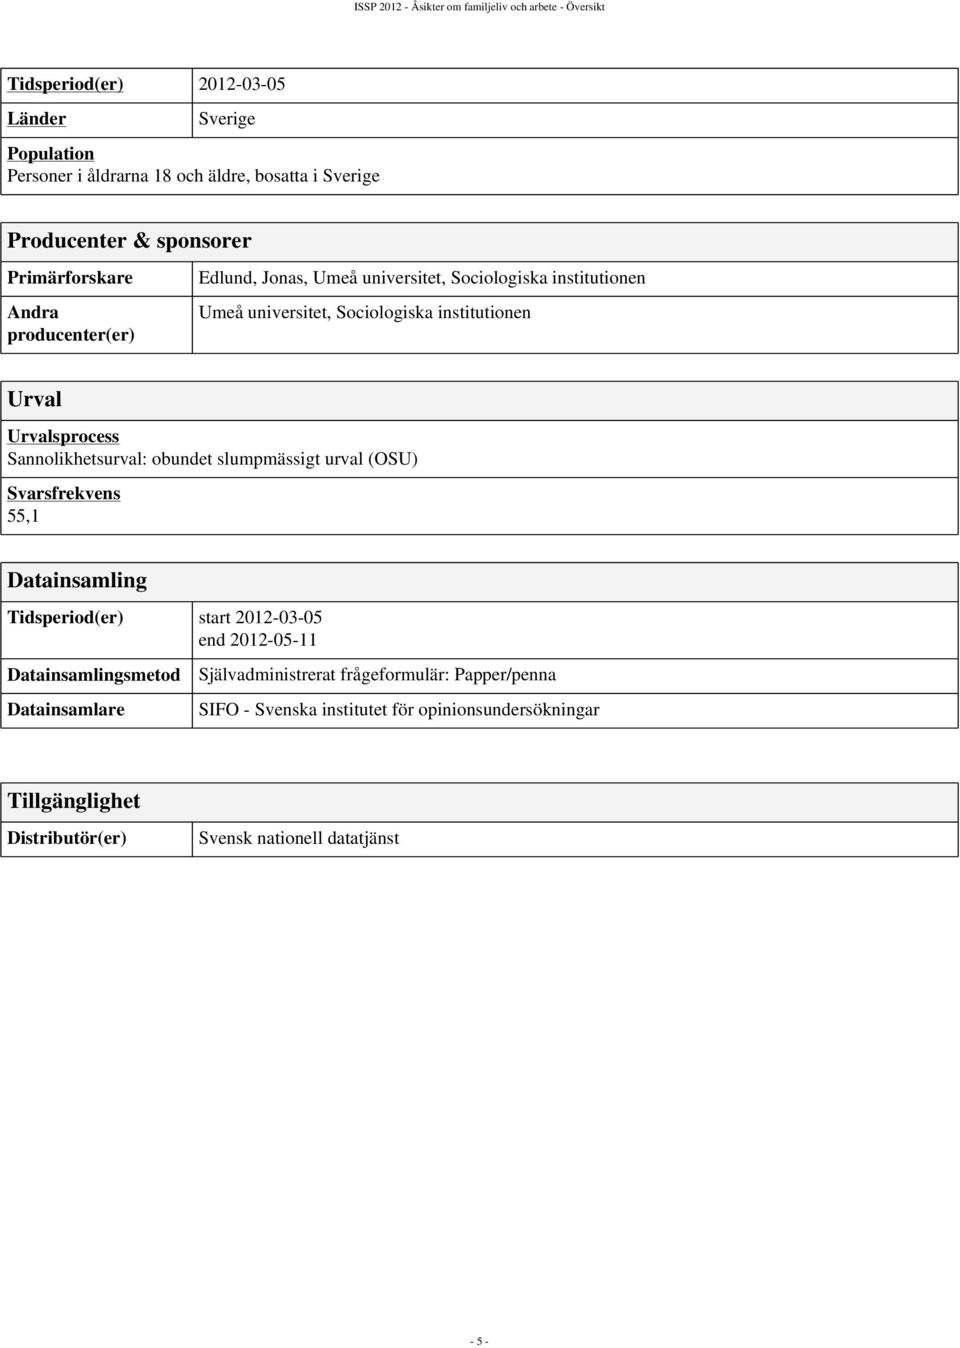 Urval Urvalsprocess Sannolikhetsurval: obundet slumpmässigt urval (OSU) Svarsfrekvens 55,1 Datainsamling Tidsperiod(er) start 2012-03-05 end 2012-05-11